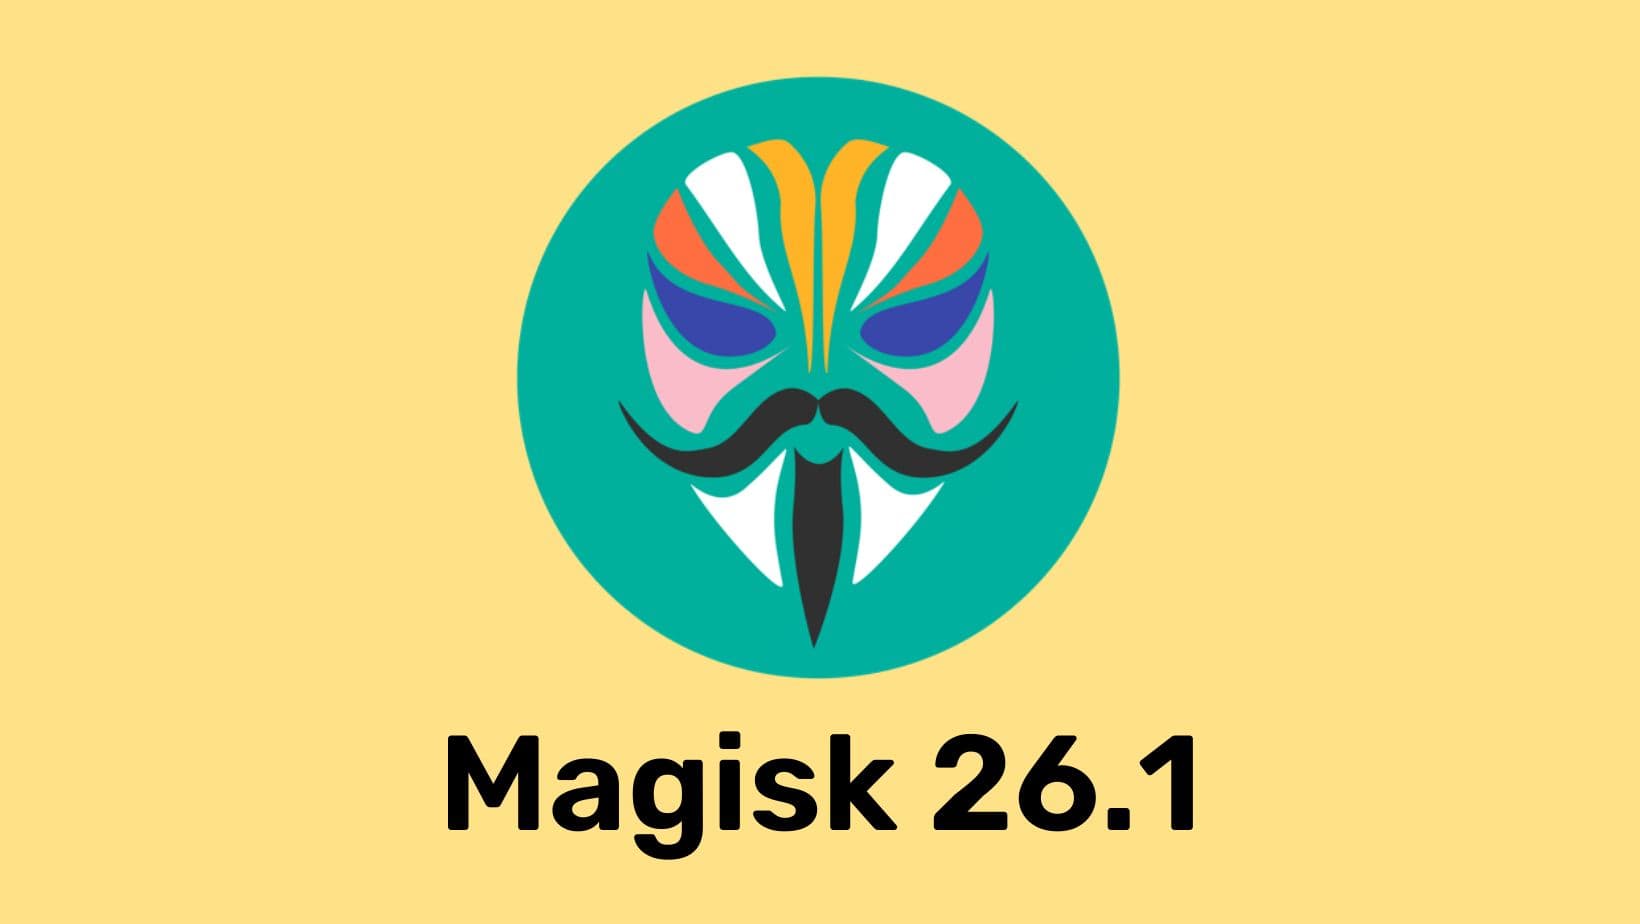 Download Magisk v26.1 ZIP and APK HotFix Update